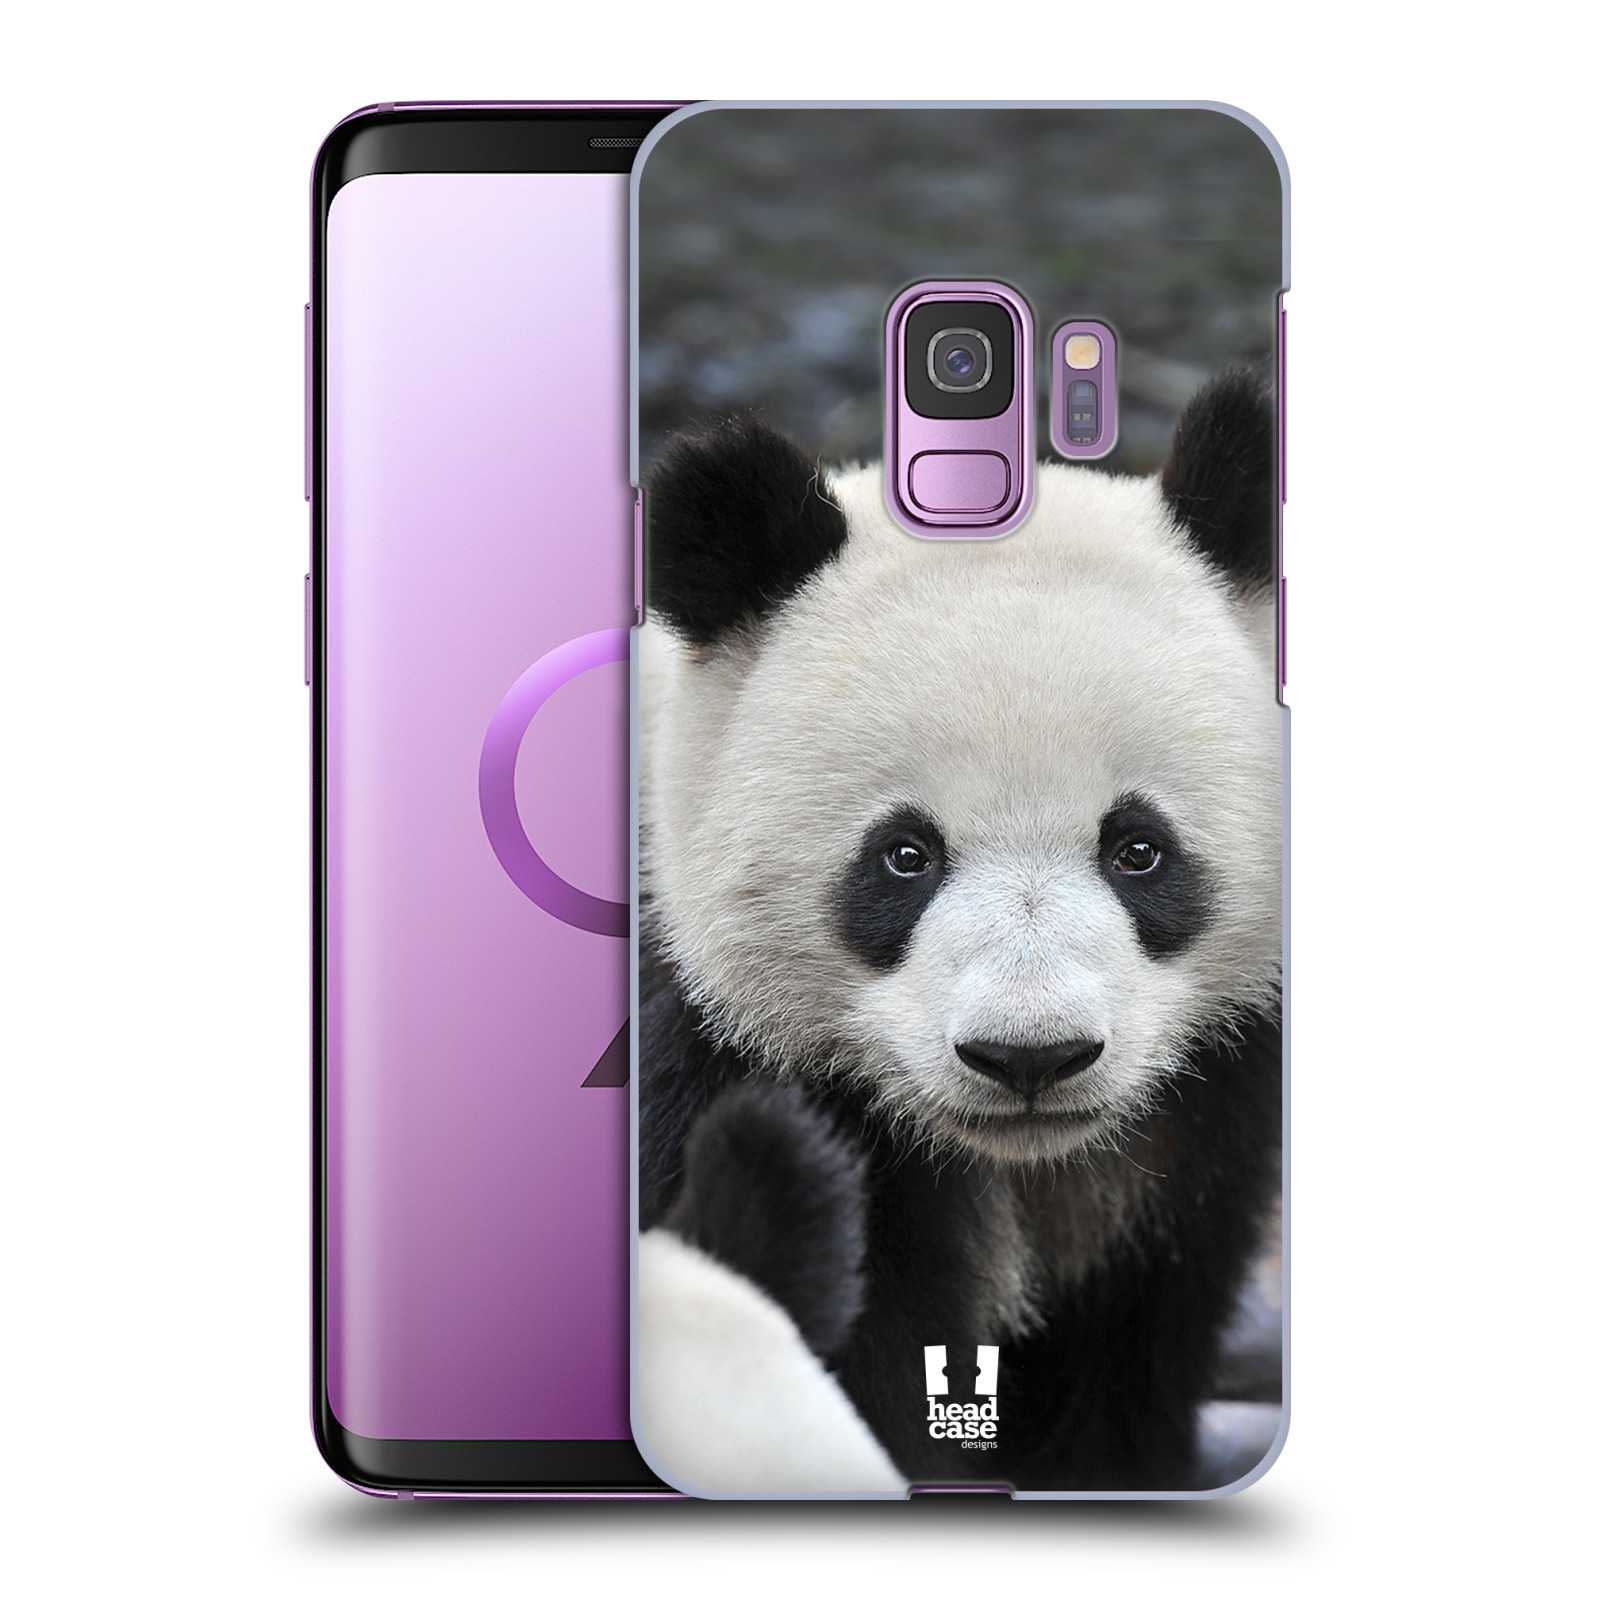 Zadní obal pro mobil Samsung Galaxy S9 - HEAD CASE - Svět zvířat medvěd panda